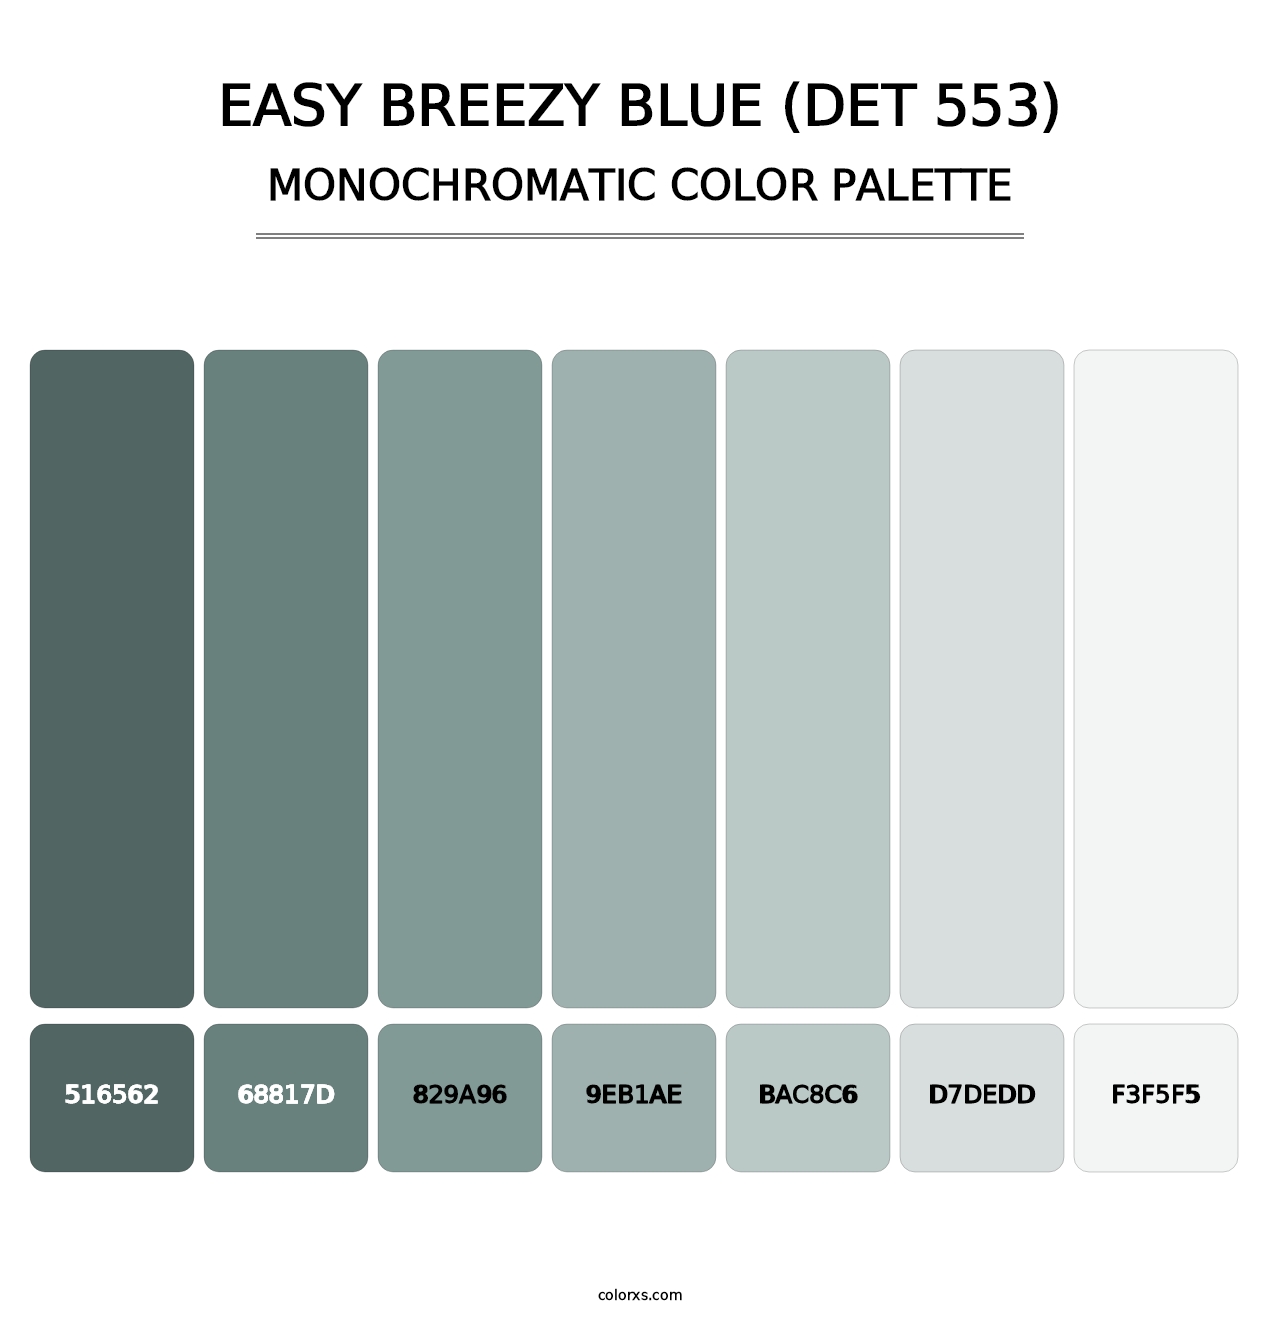 Easy Breezy Blue (DET 553) - Monochromatic Color Palette